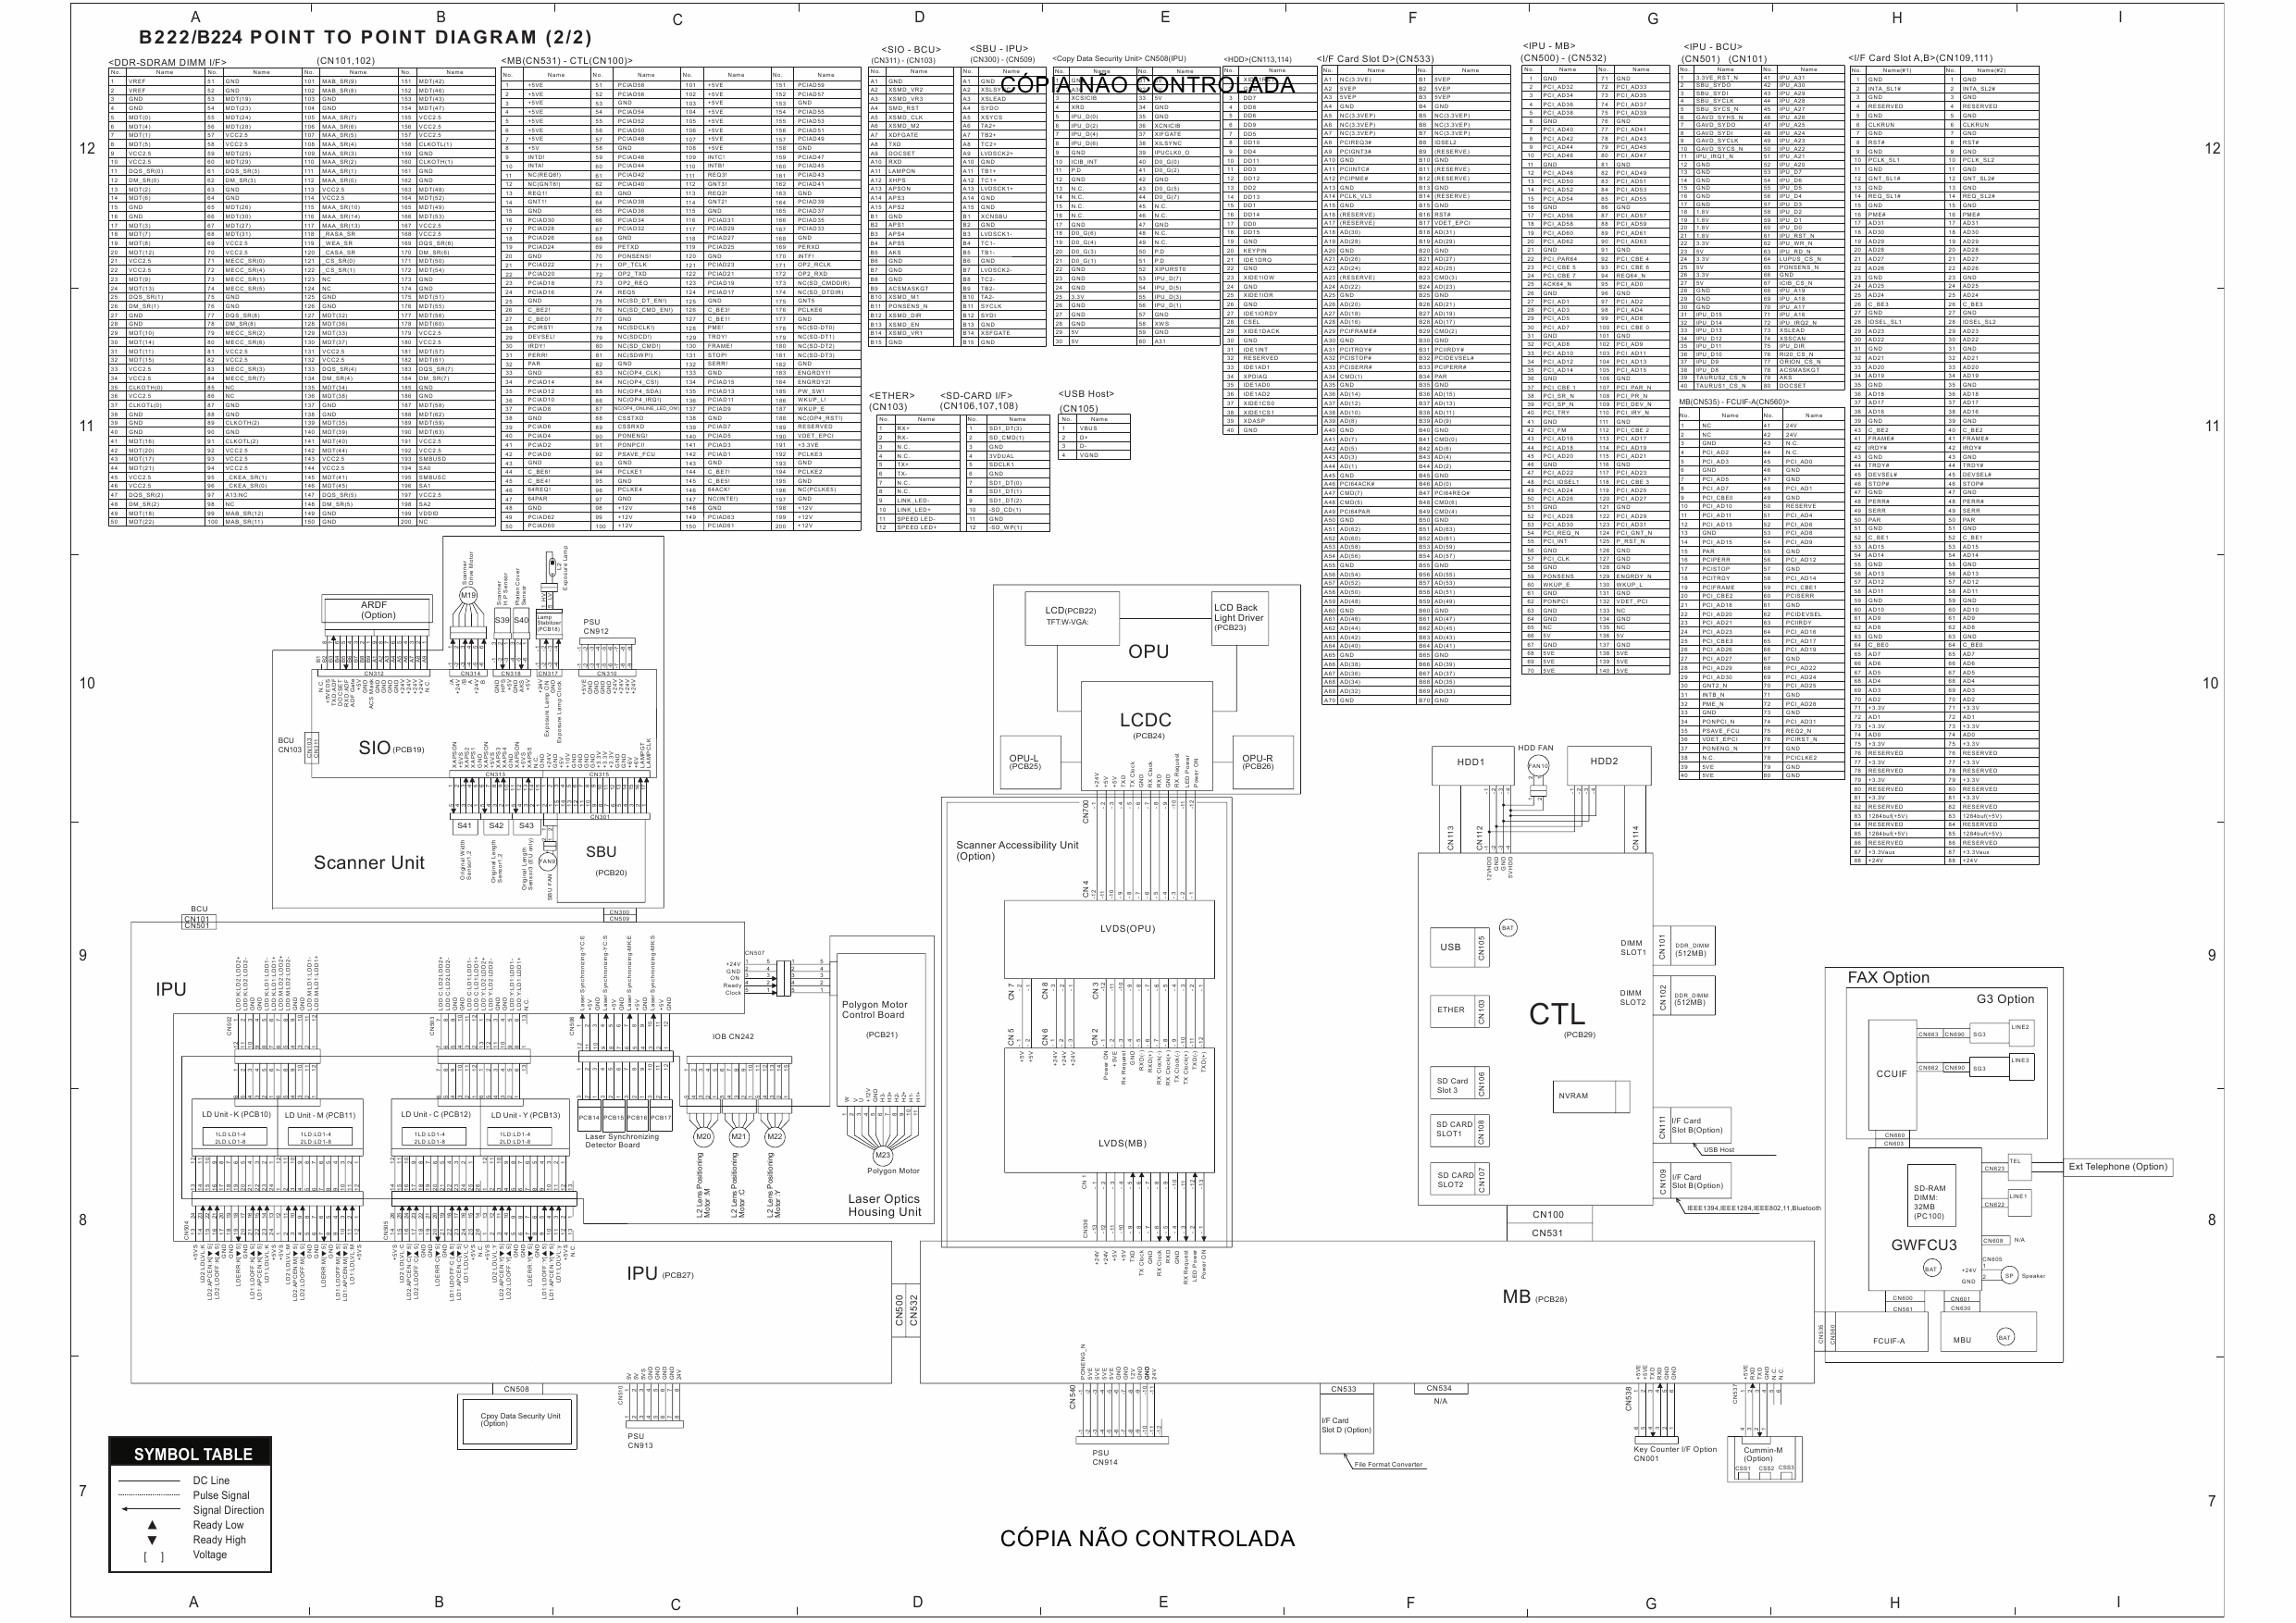 RICOH Aficio MP-C3500 C4500 B222 B224 Circuit Diagram-2